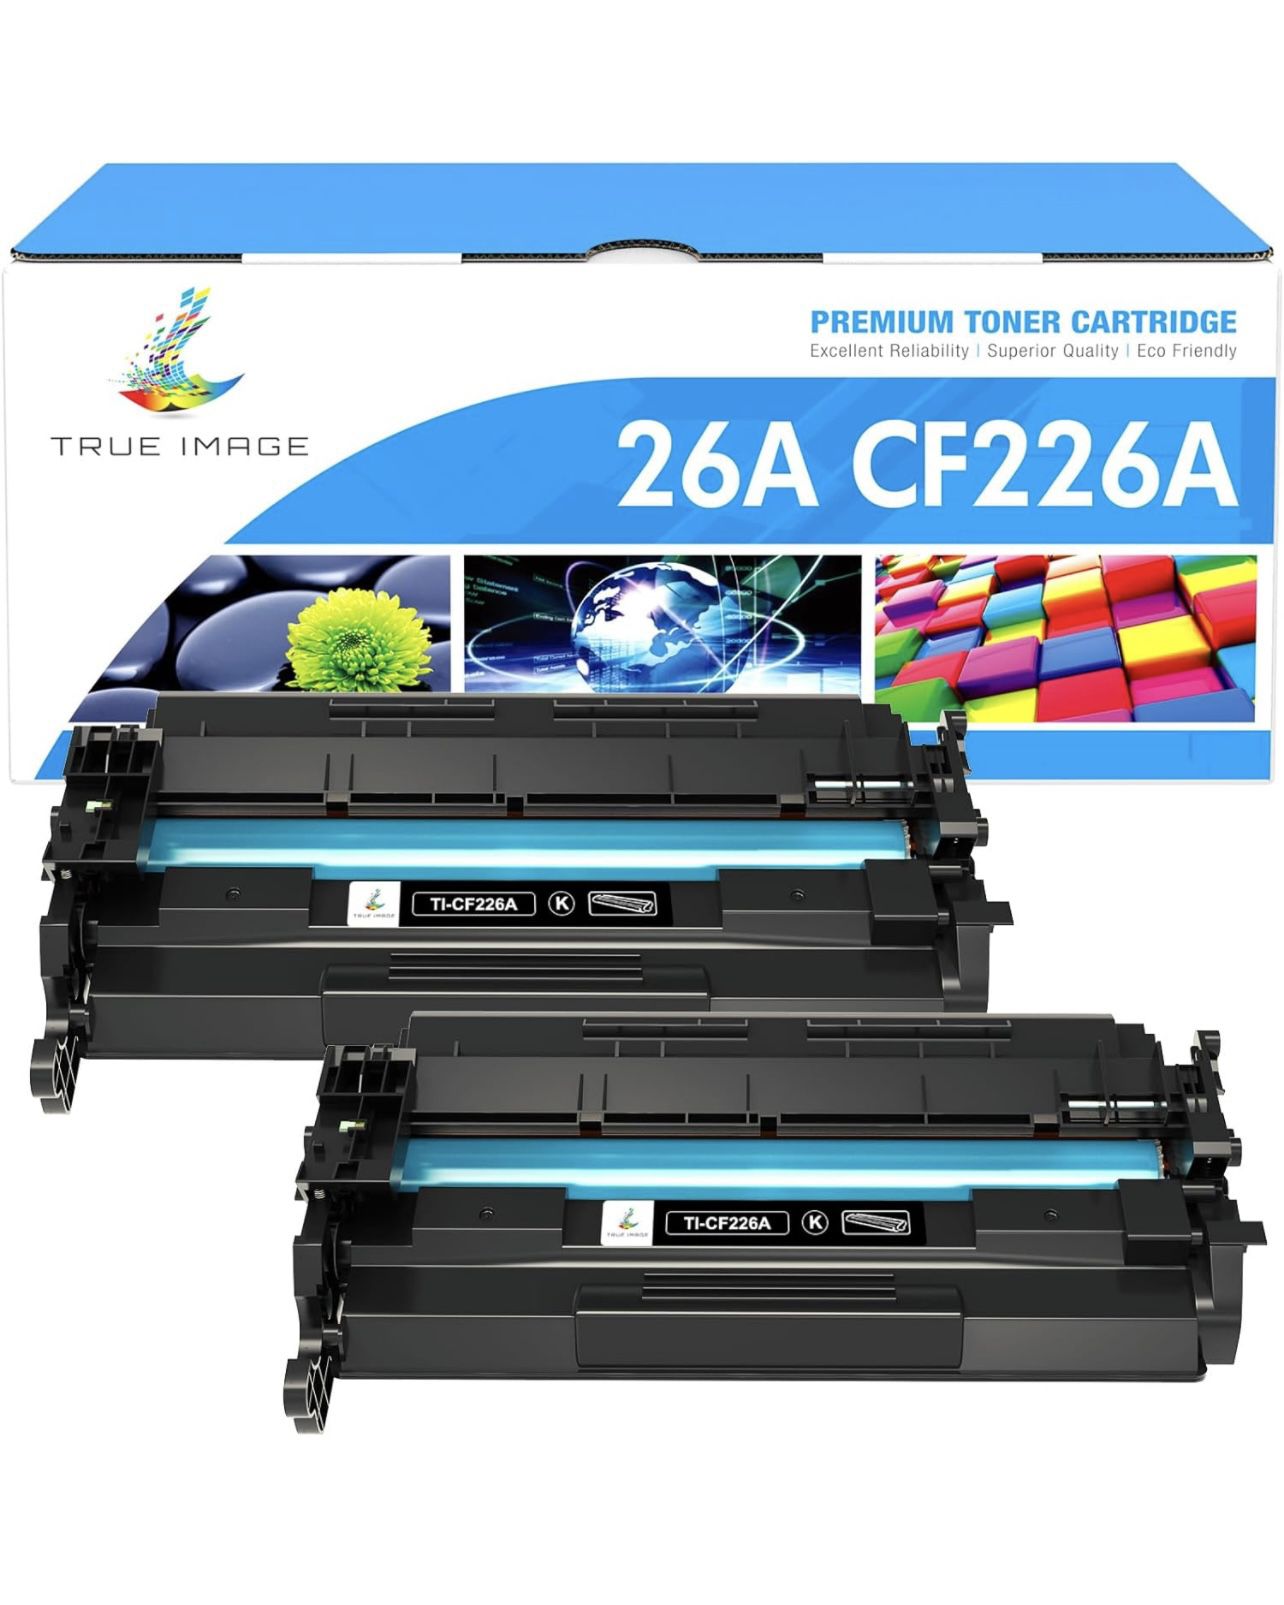 26A Toner Cartridge for HP Printer CF226A Compatible for HP 26A Black Laserjet Toner Cartridge 26X CF226X M402n M402dn M402 M402dw M402dne MFP M426fdw